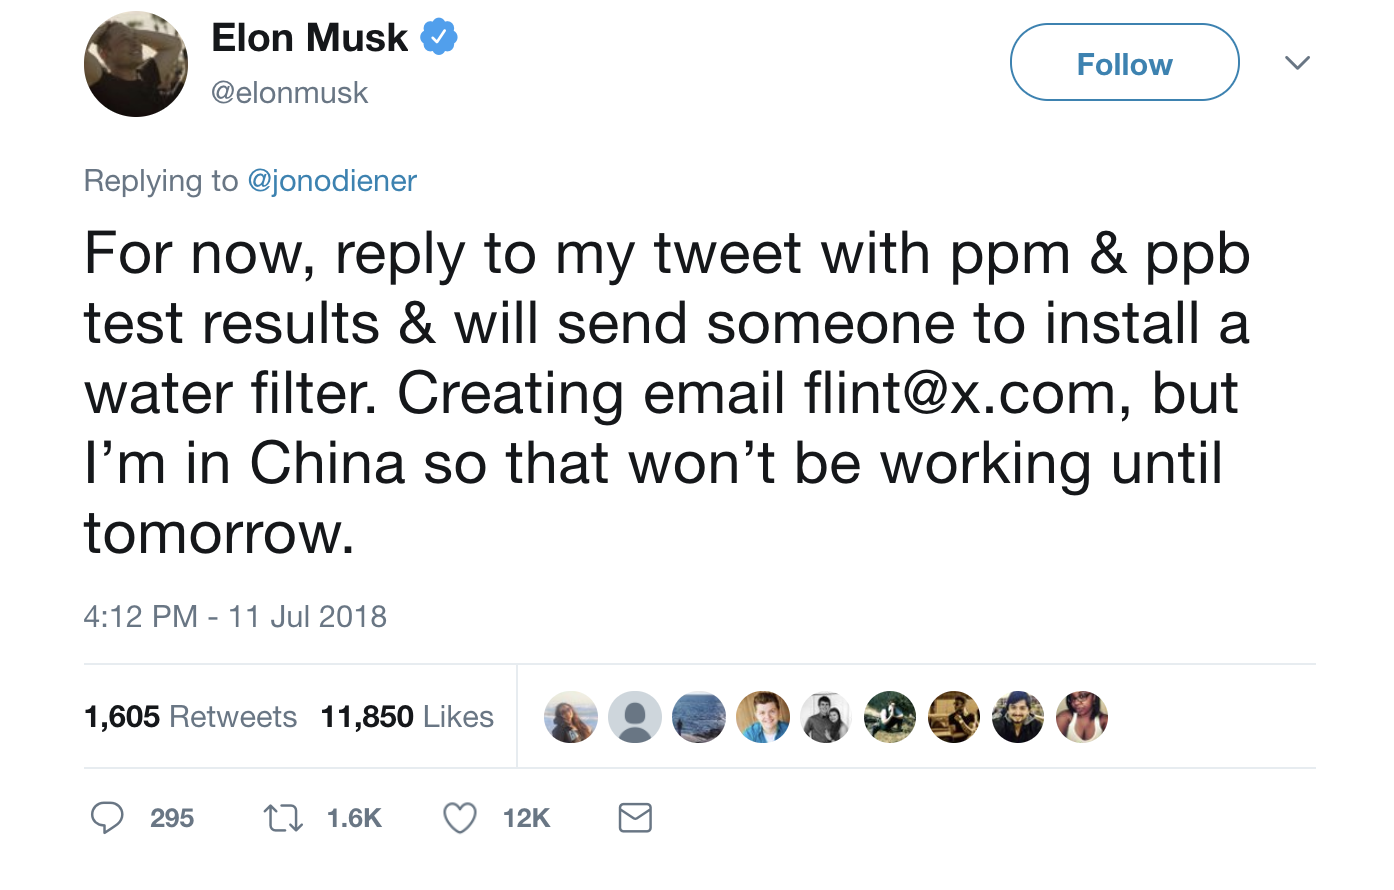 Elon Musk Flint Water Filter Tweet